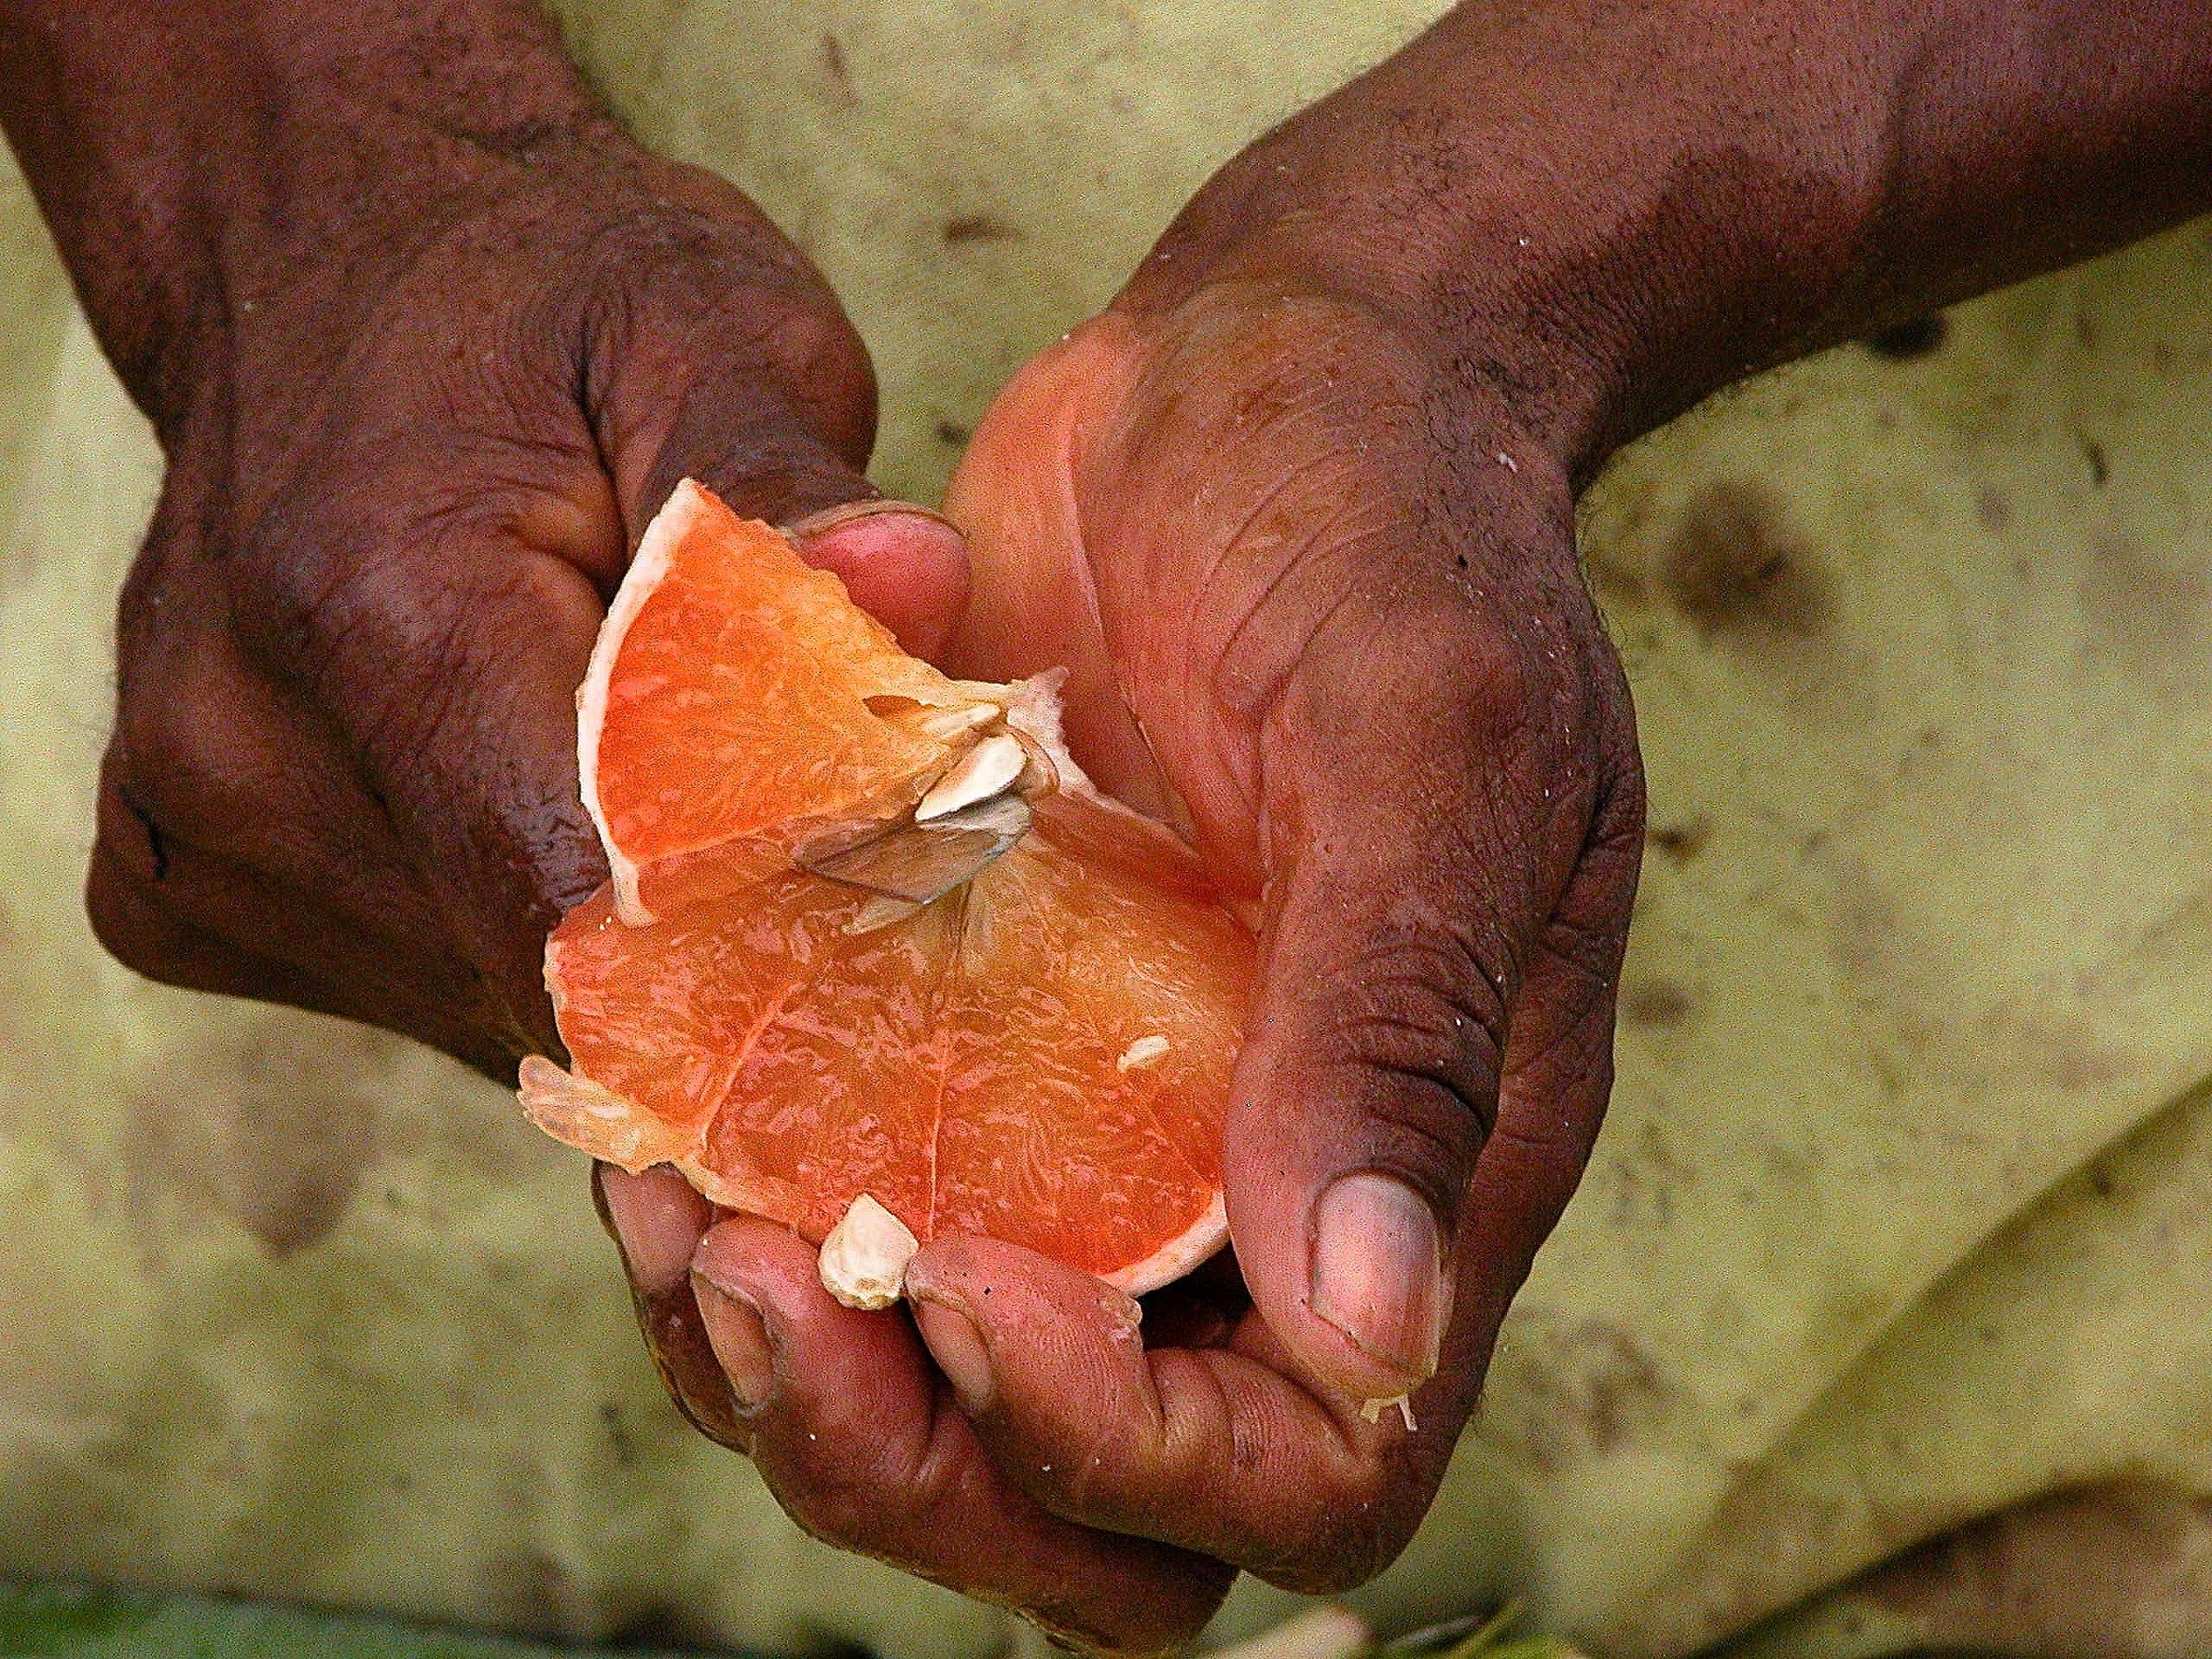 Il frutto nelle mani...